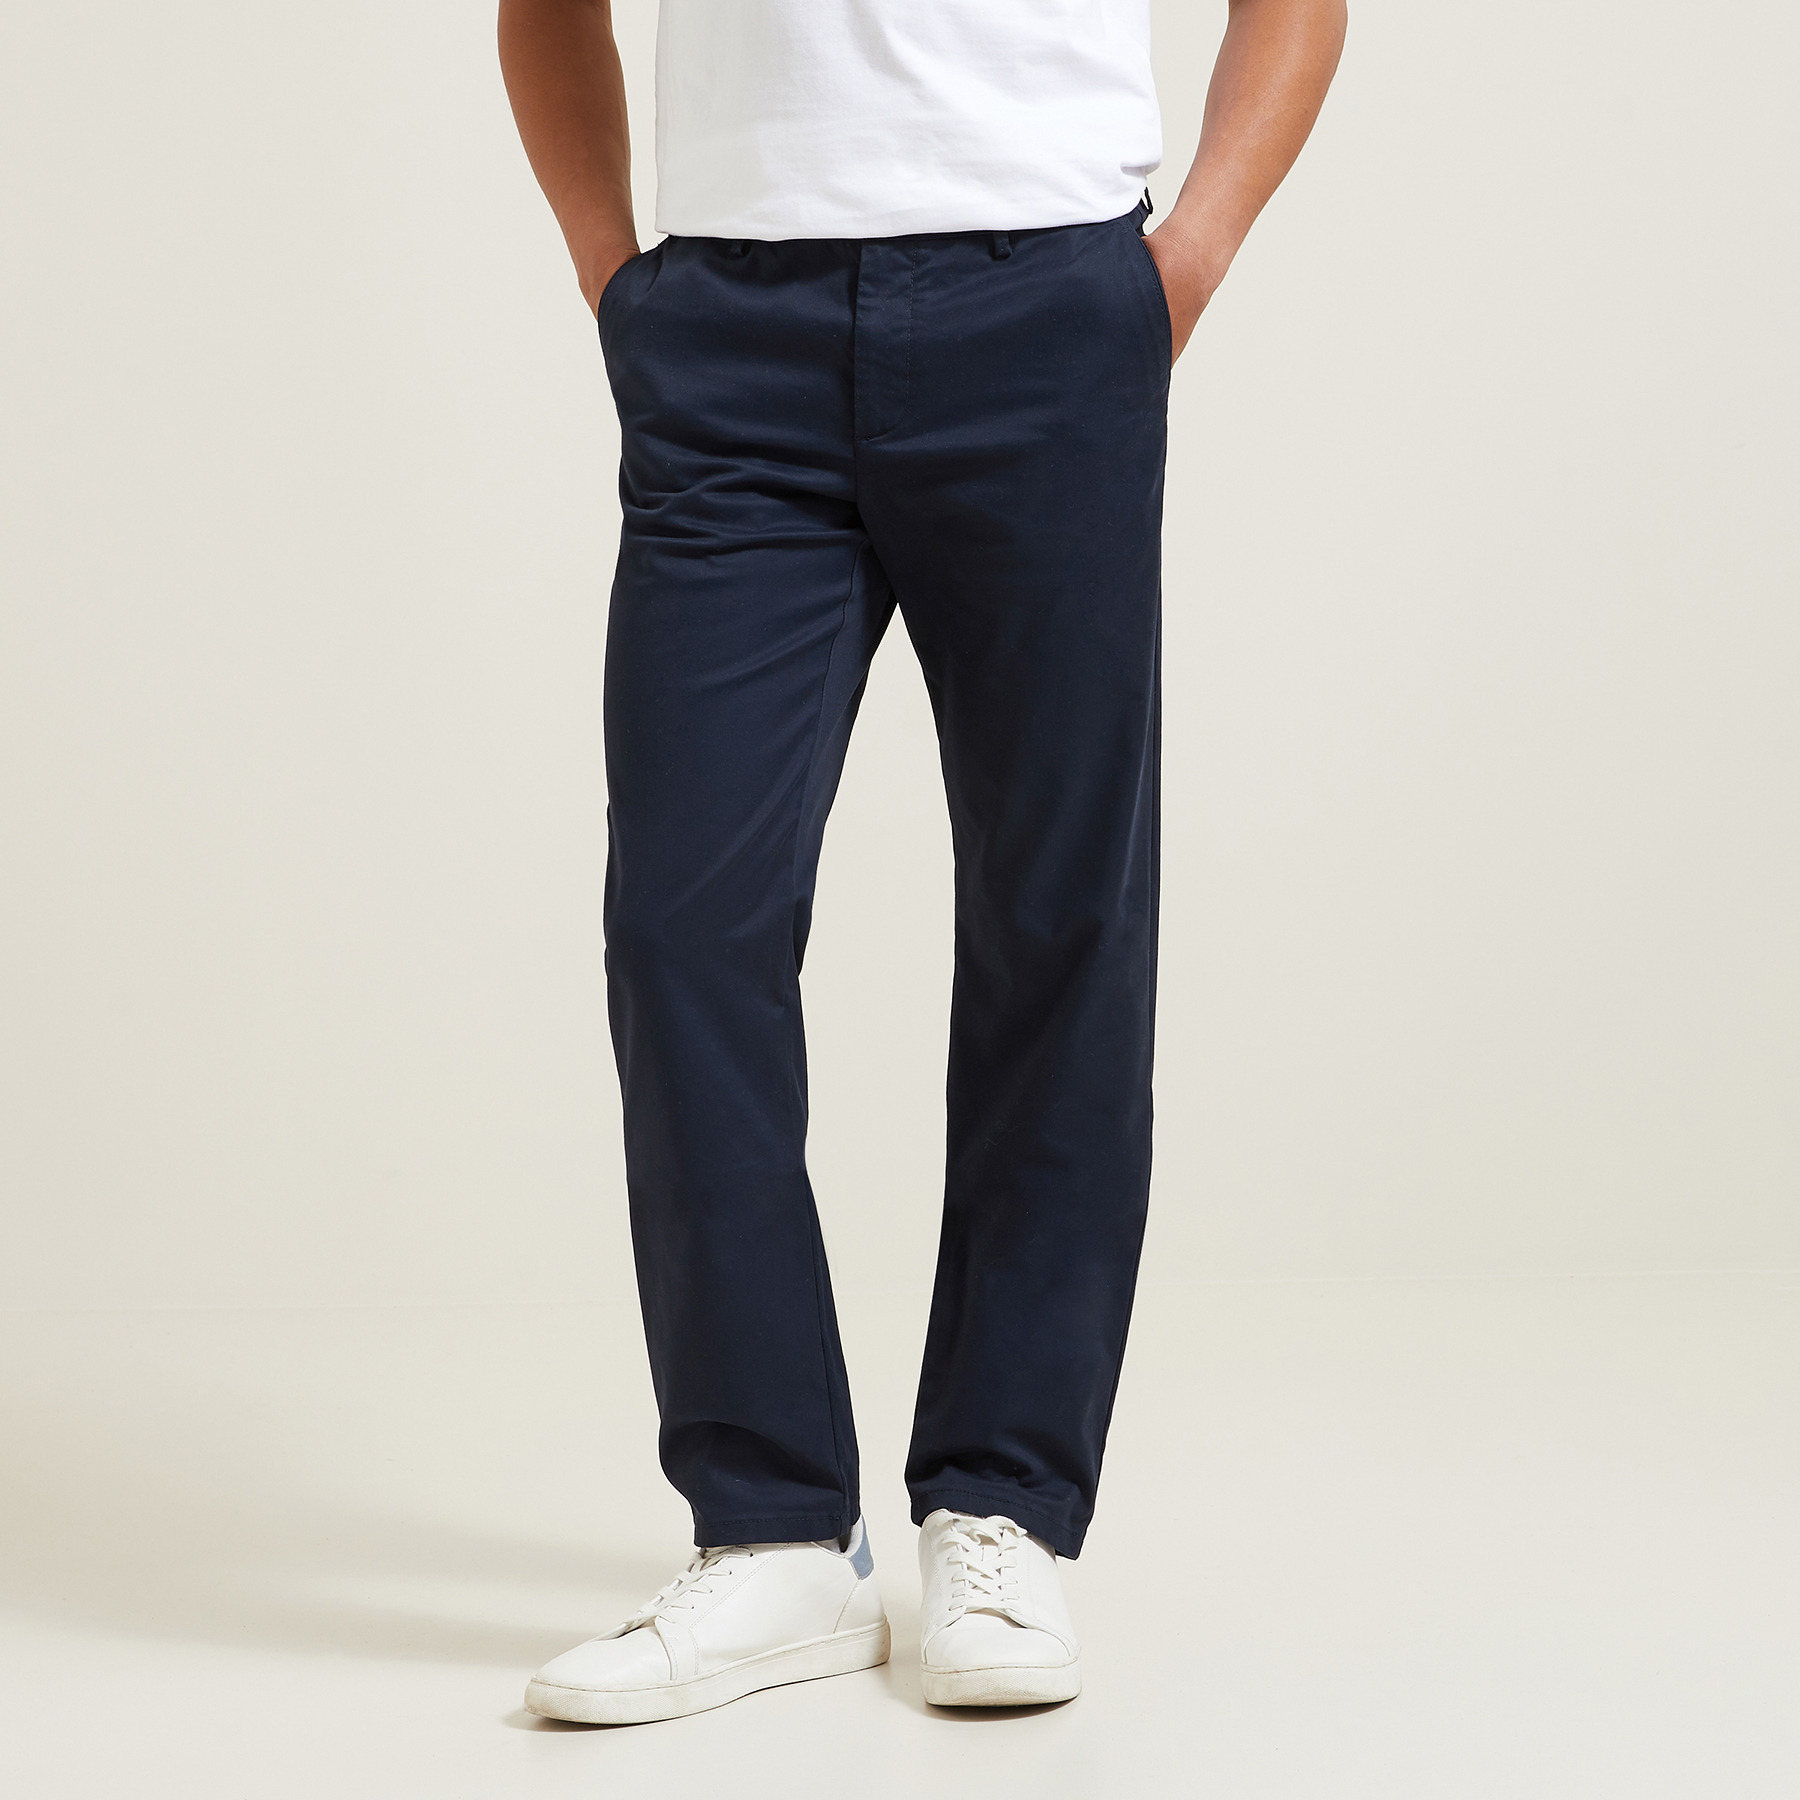 Pantalon chino regular "le parfait by JULES" Bleu 38 98% Coton, 2% Elasthanne Homme